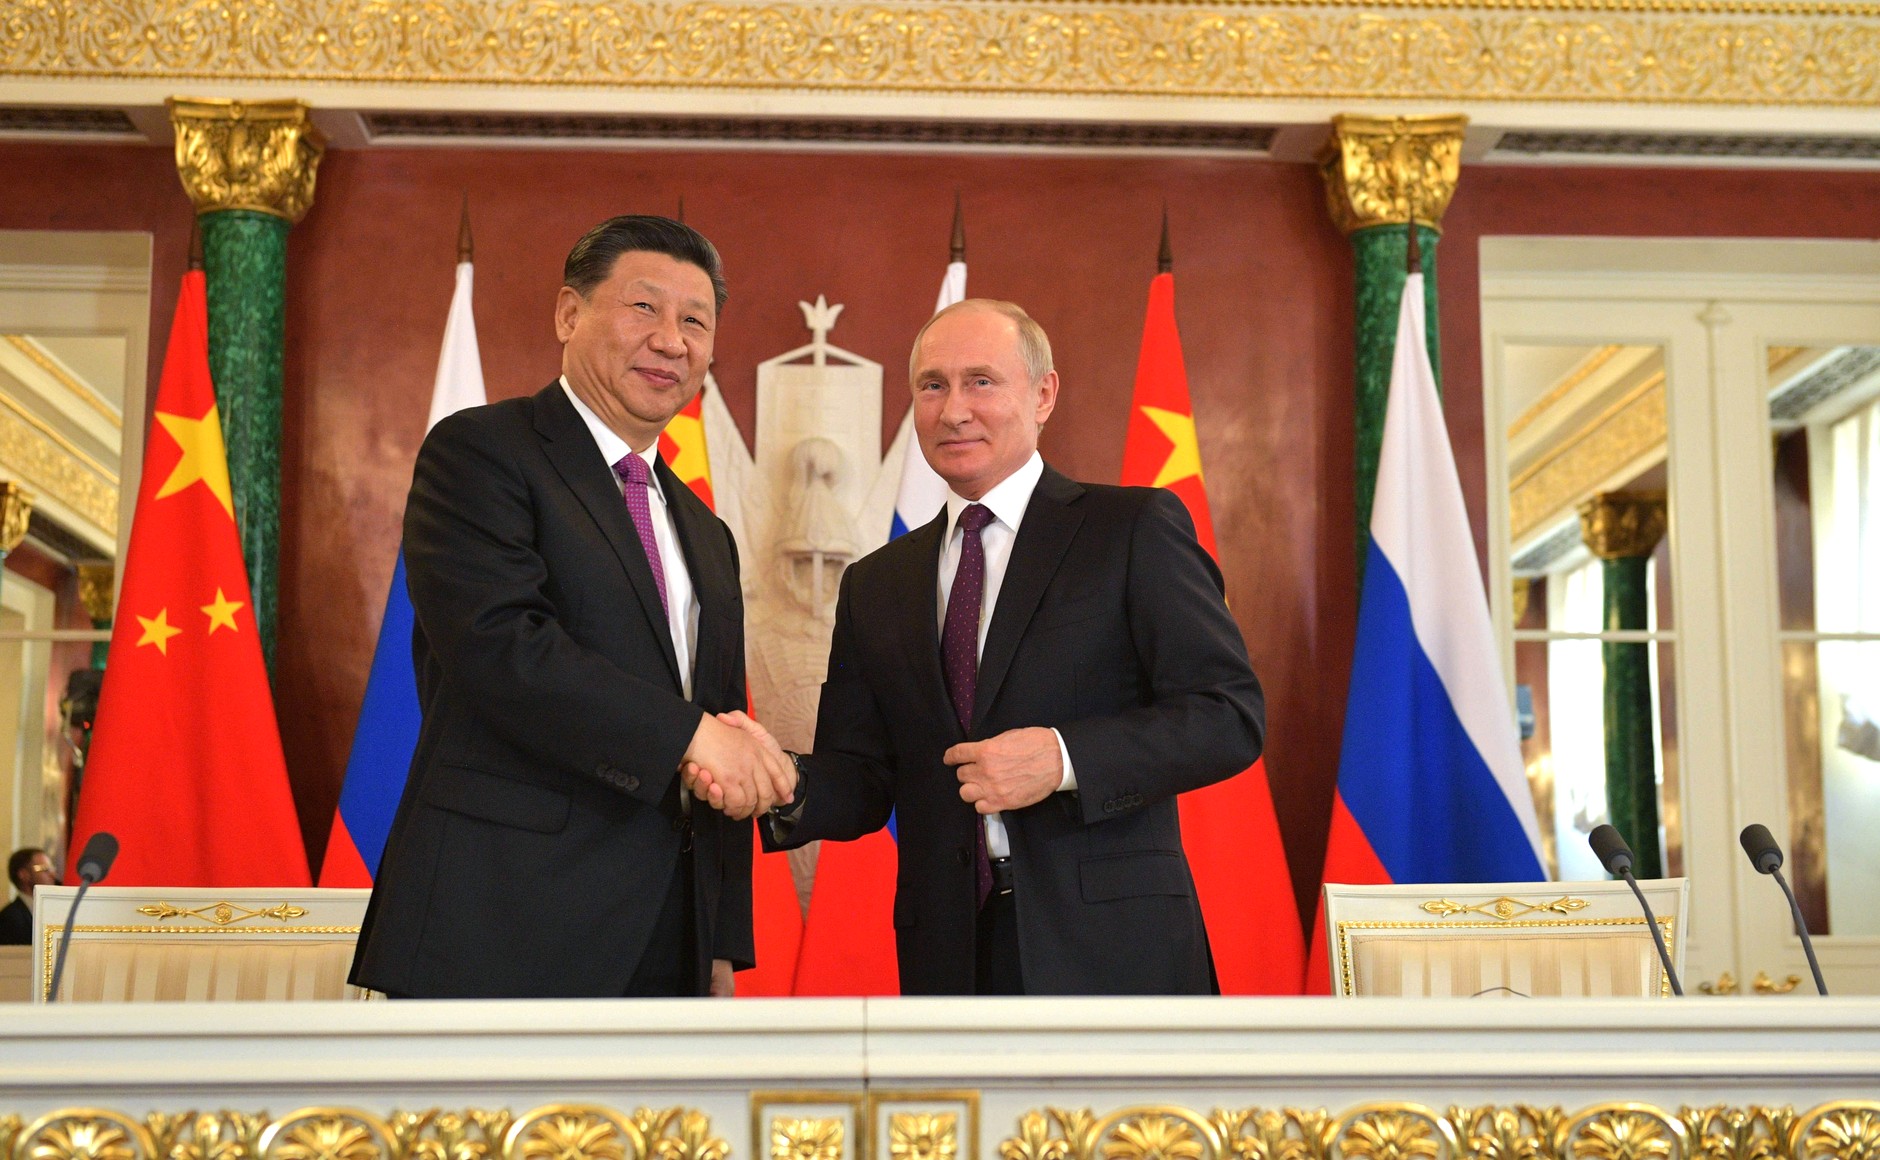 Cuộc chiến của Nga với Ukraine thúc đẩy tham vọng tài chính của Trung Quốc. Ảnh: @AFP.